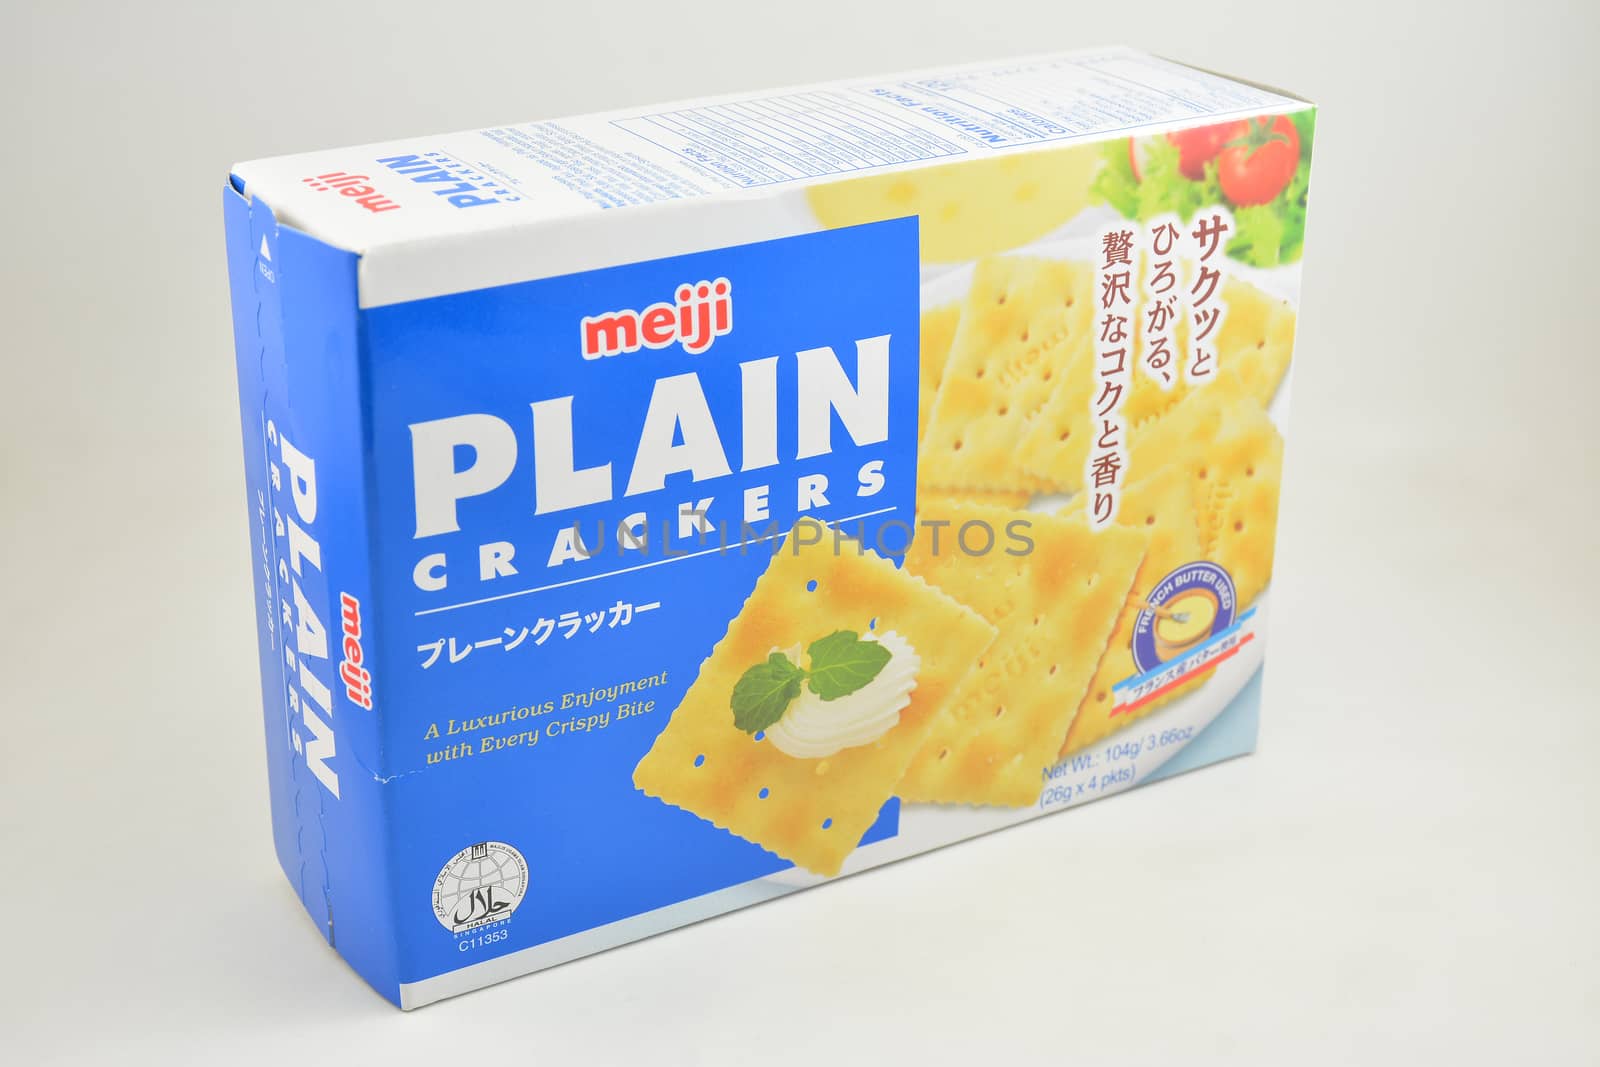 MANILA, PH - SEPT 10 - Meiji plain crackers on September 10, 2020 in Manila, Philippines.